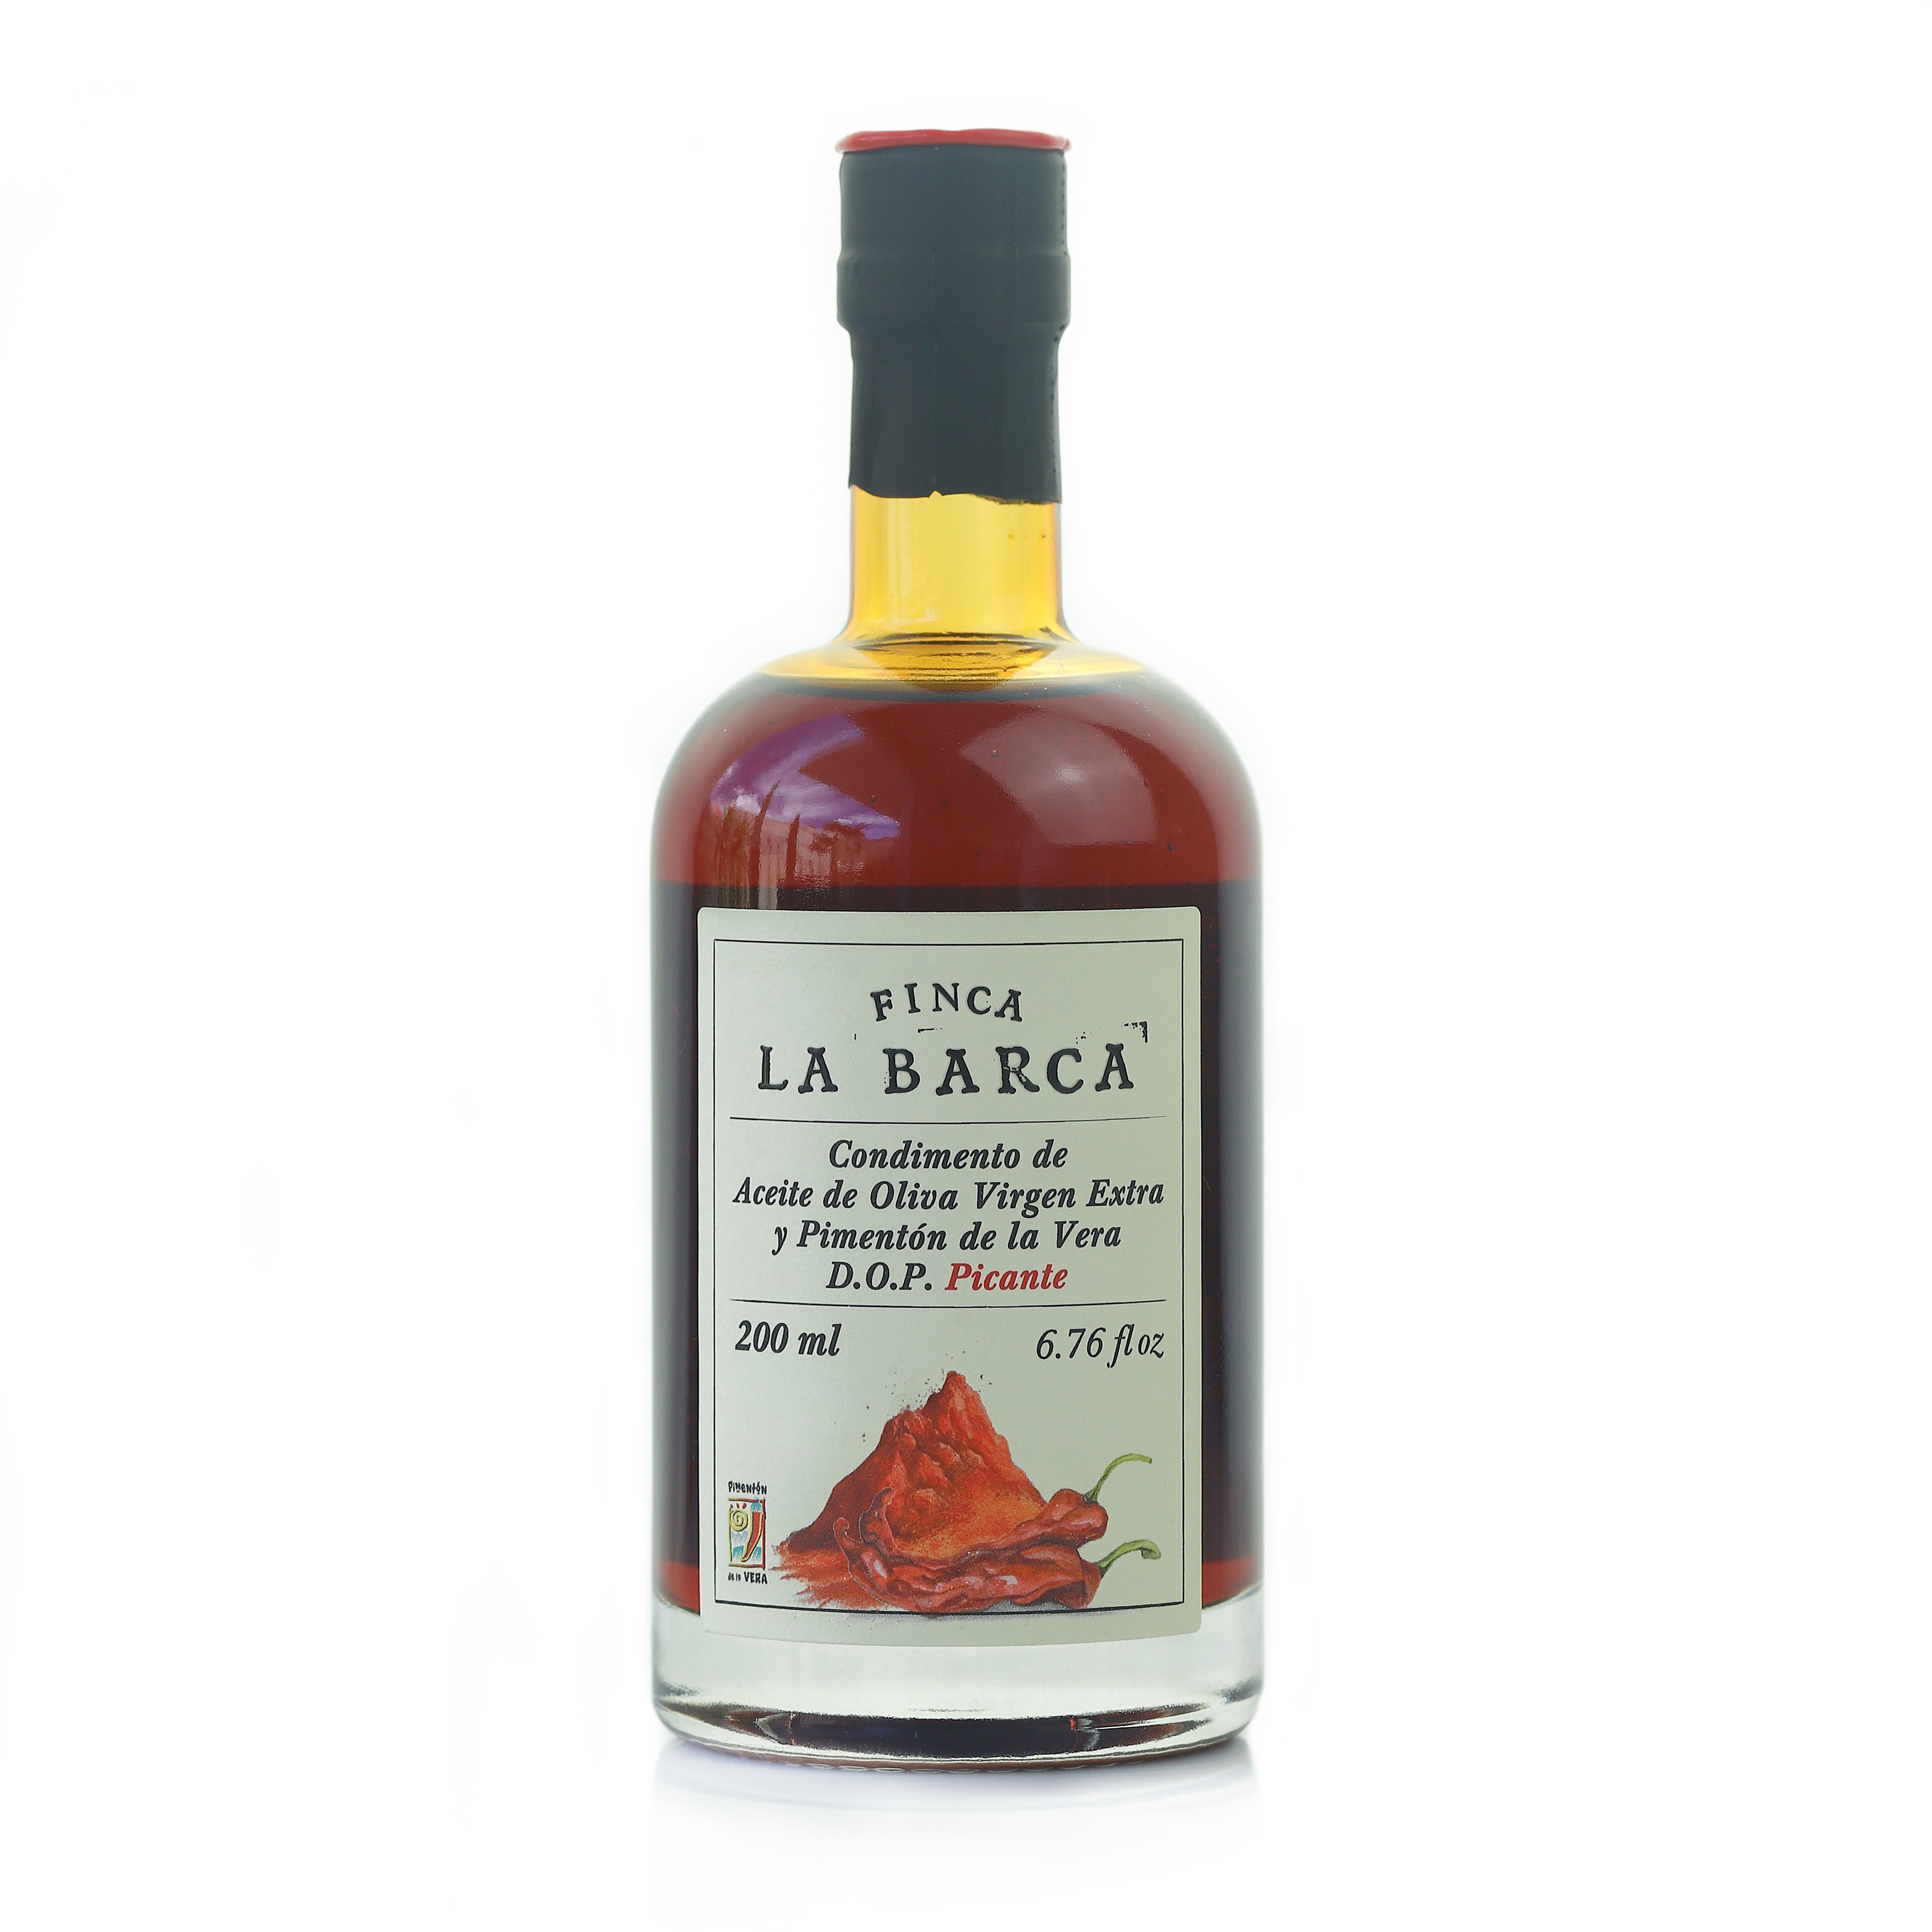 Condimento de Aceite de Oliva Virgen Extra y Pimentón de La Vera Picante D.O.P. 200 ml.